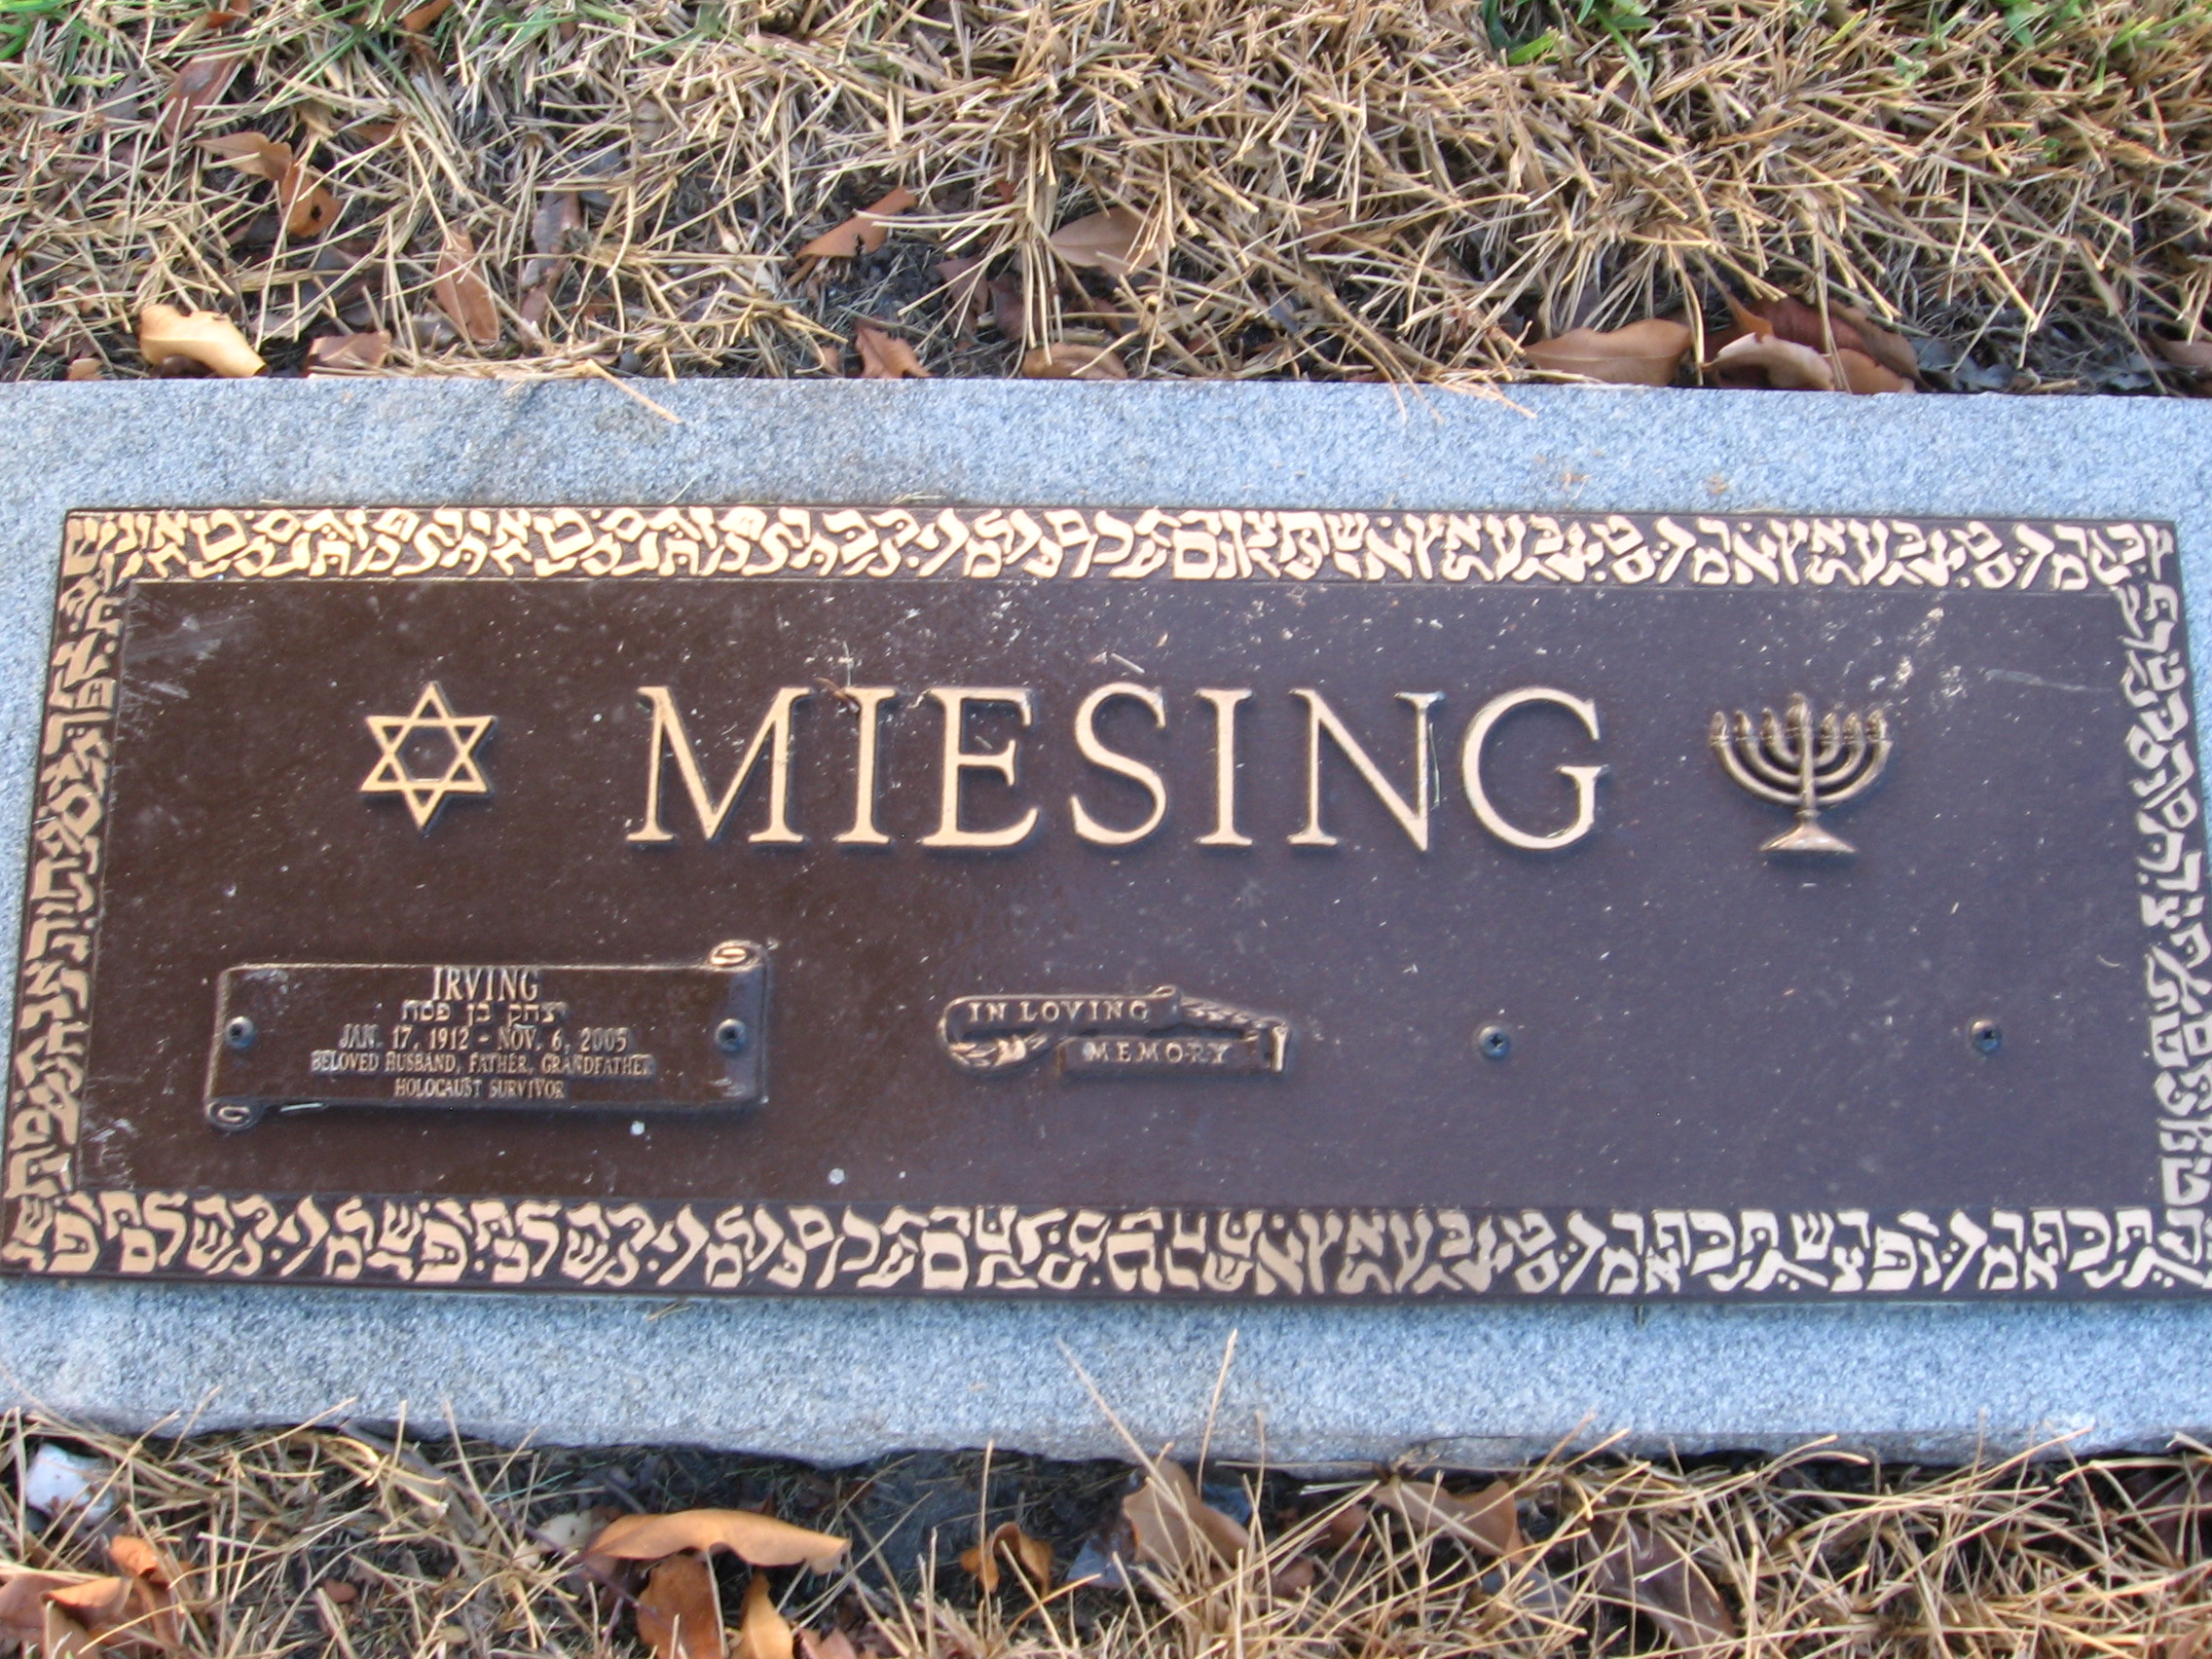 Irving Meising